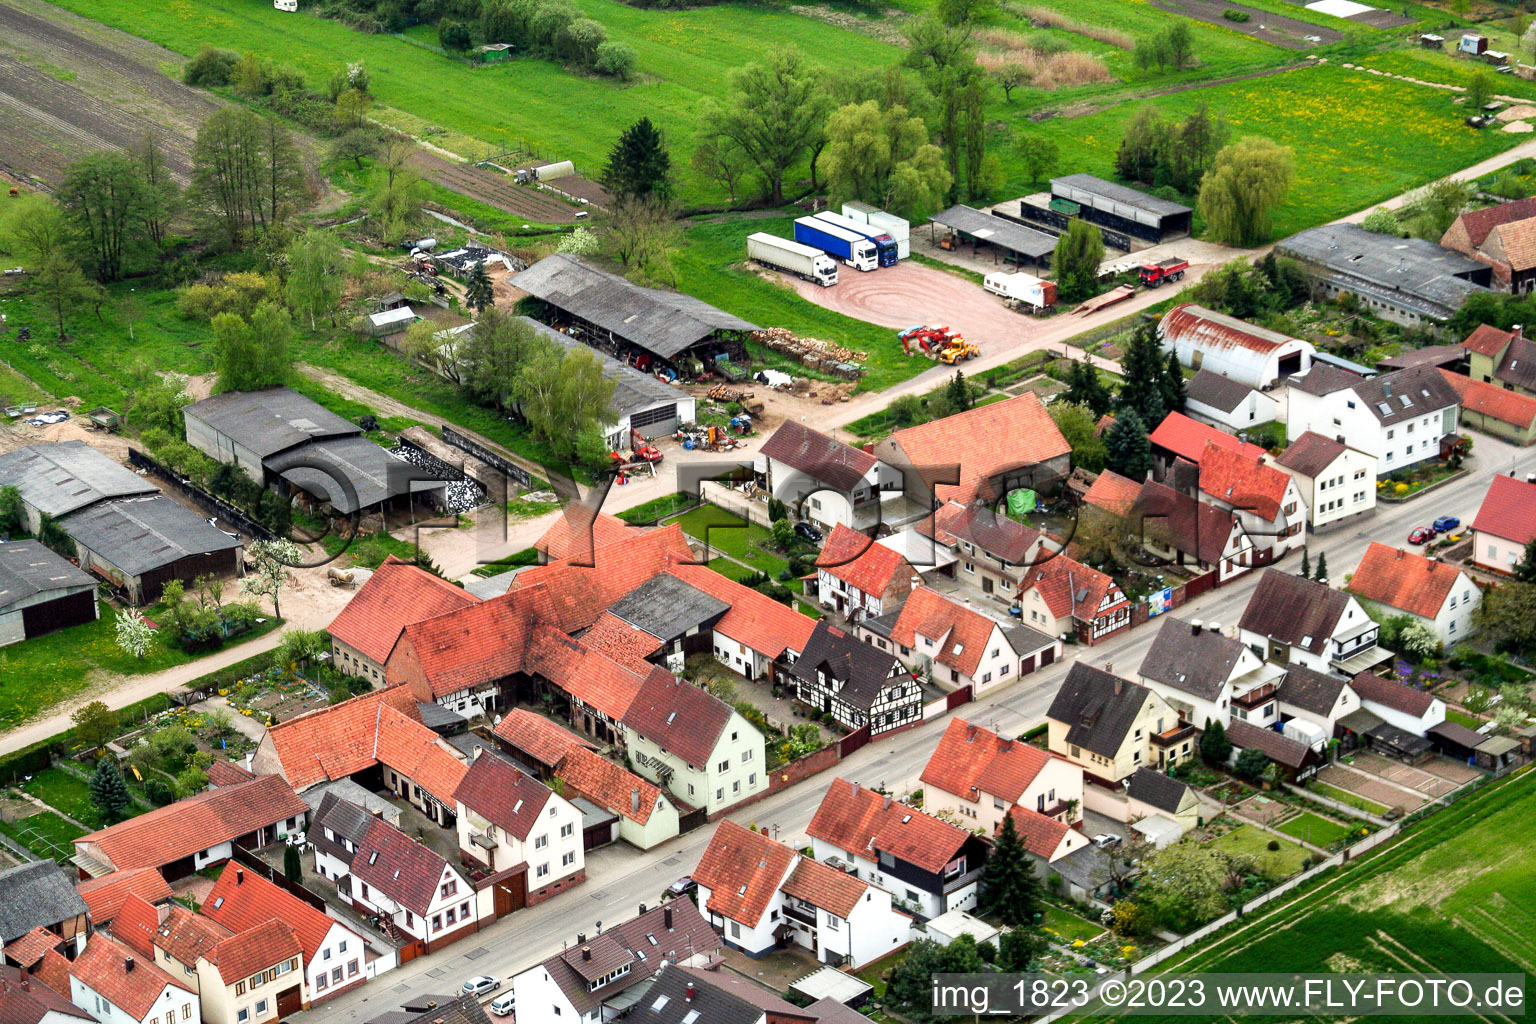 Kandel Saarstr im Bundesland Rheinland-Pfalz, Deutschland aus der Luft betrachtet